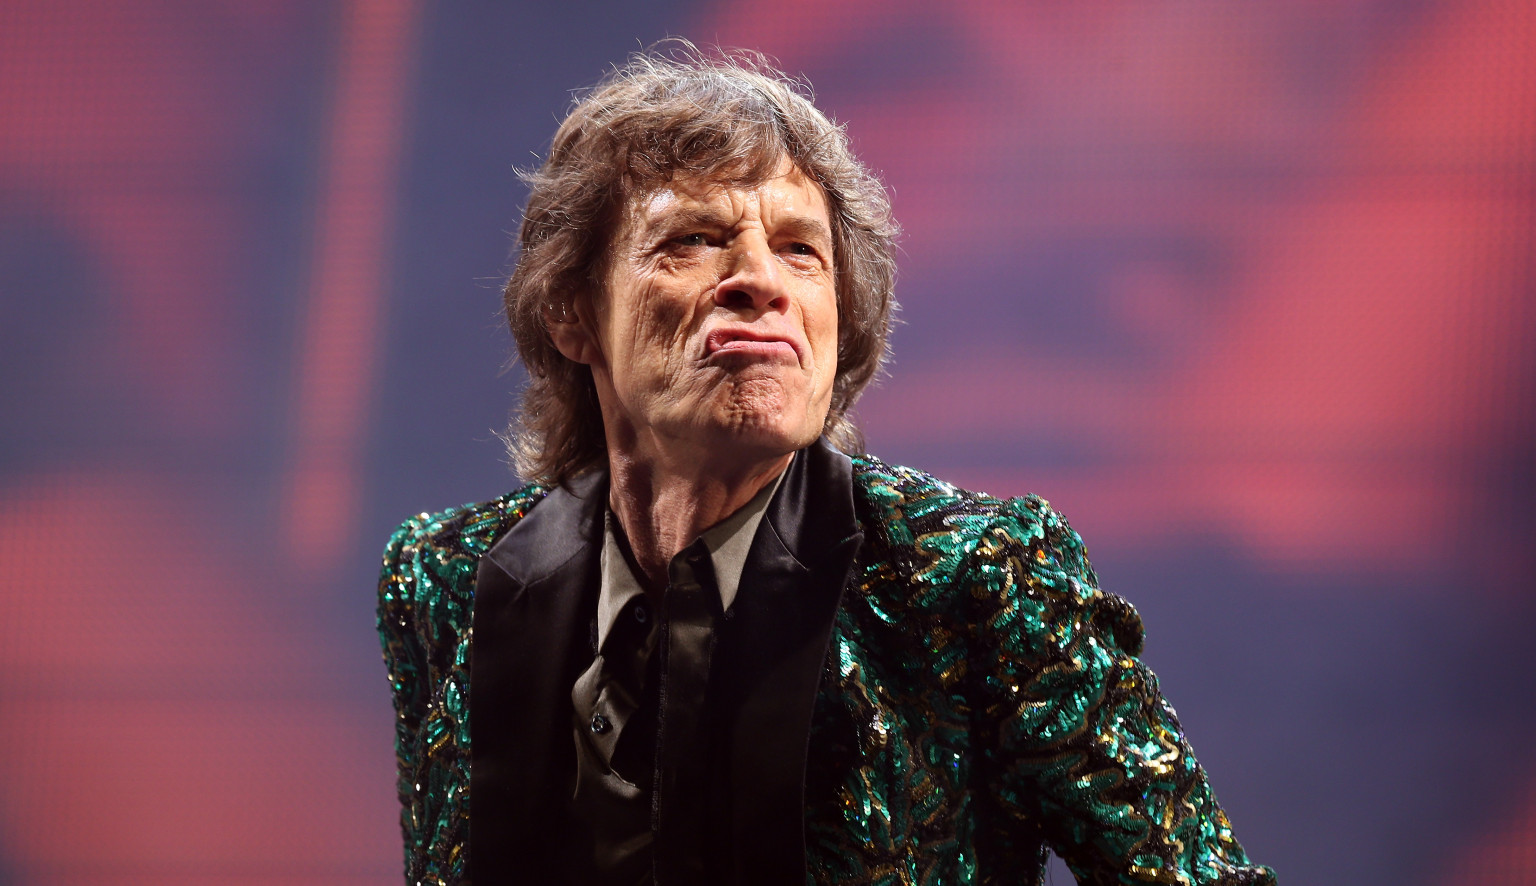 Ξαφνικό πρόβλημα υγείας για τον Mick Jagger! Οι Rolling Stones αναβάλλουν την περιοδεία τους